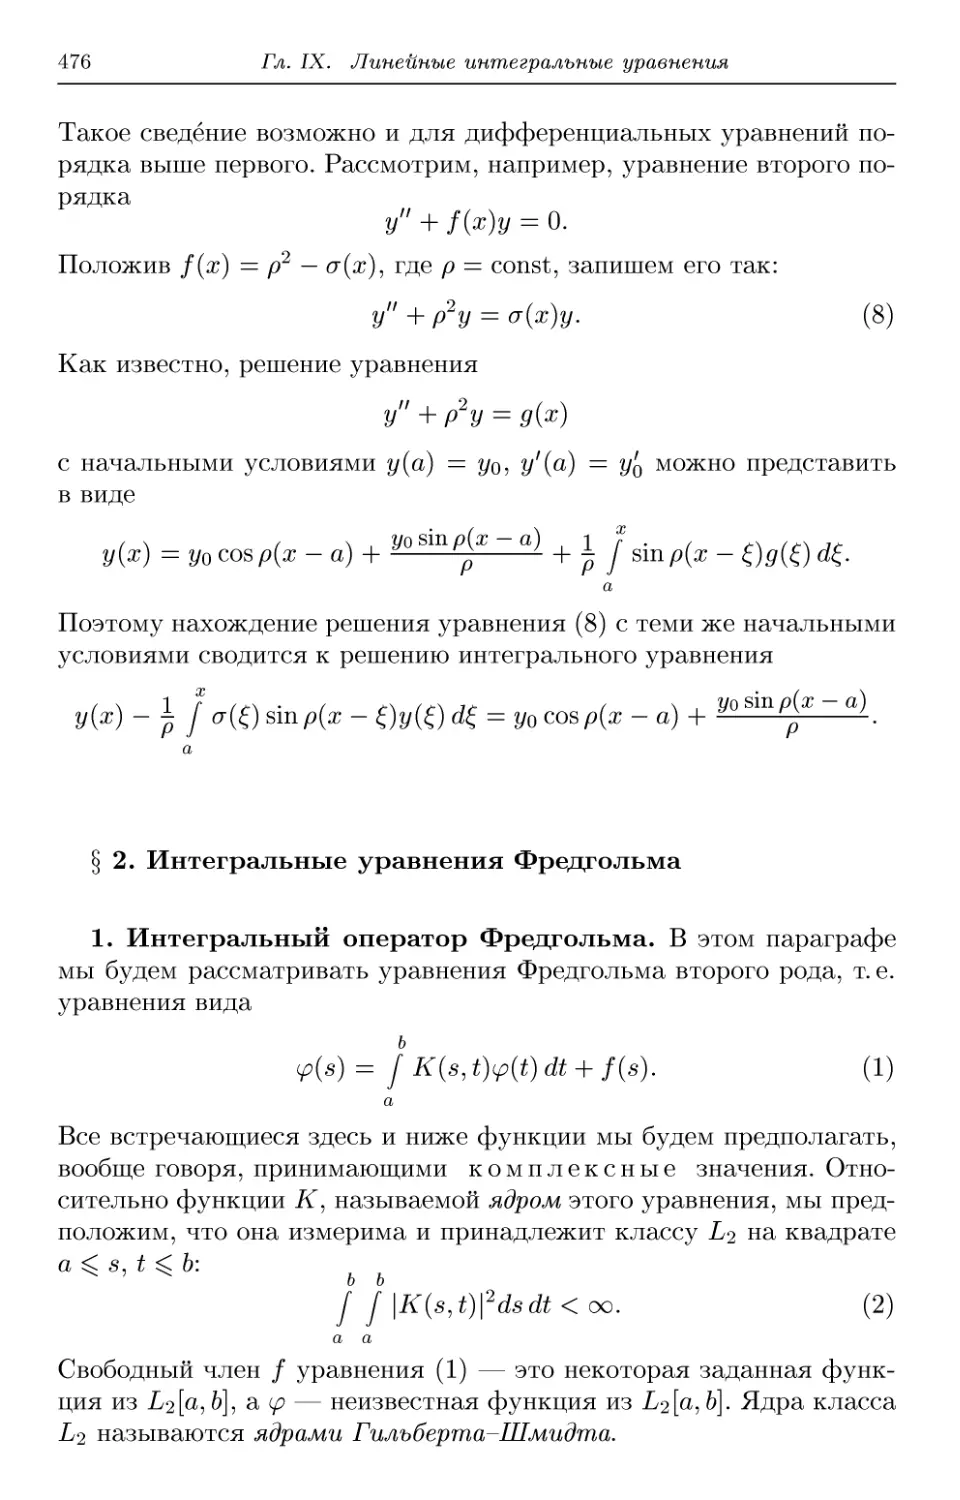 § 2. Интегральные уравнения Фредгольма